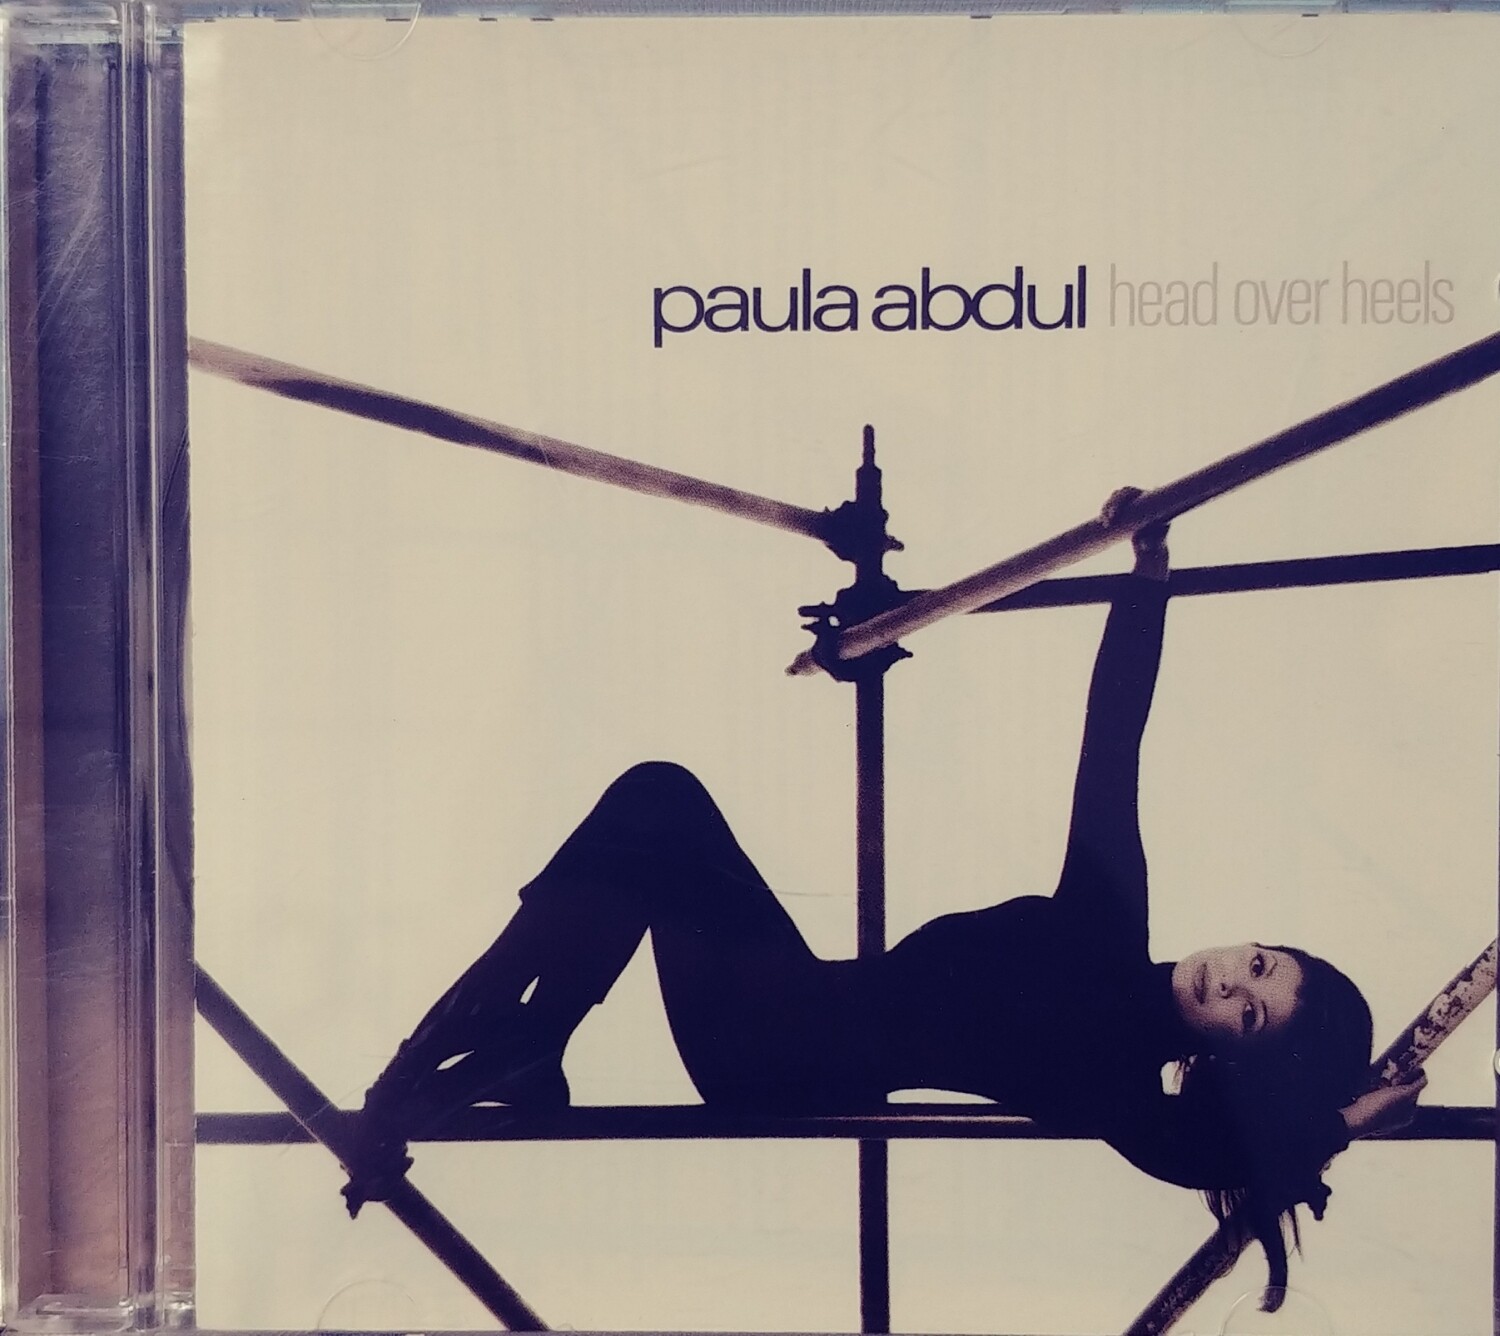 Paula Abdul - Head over heels (CD)